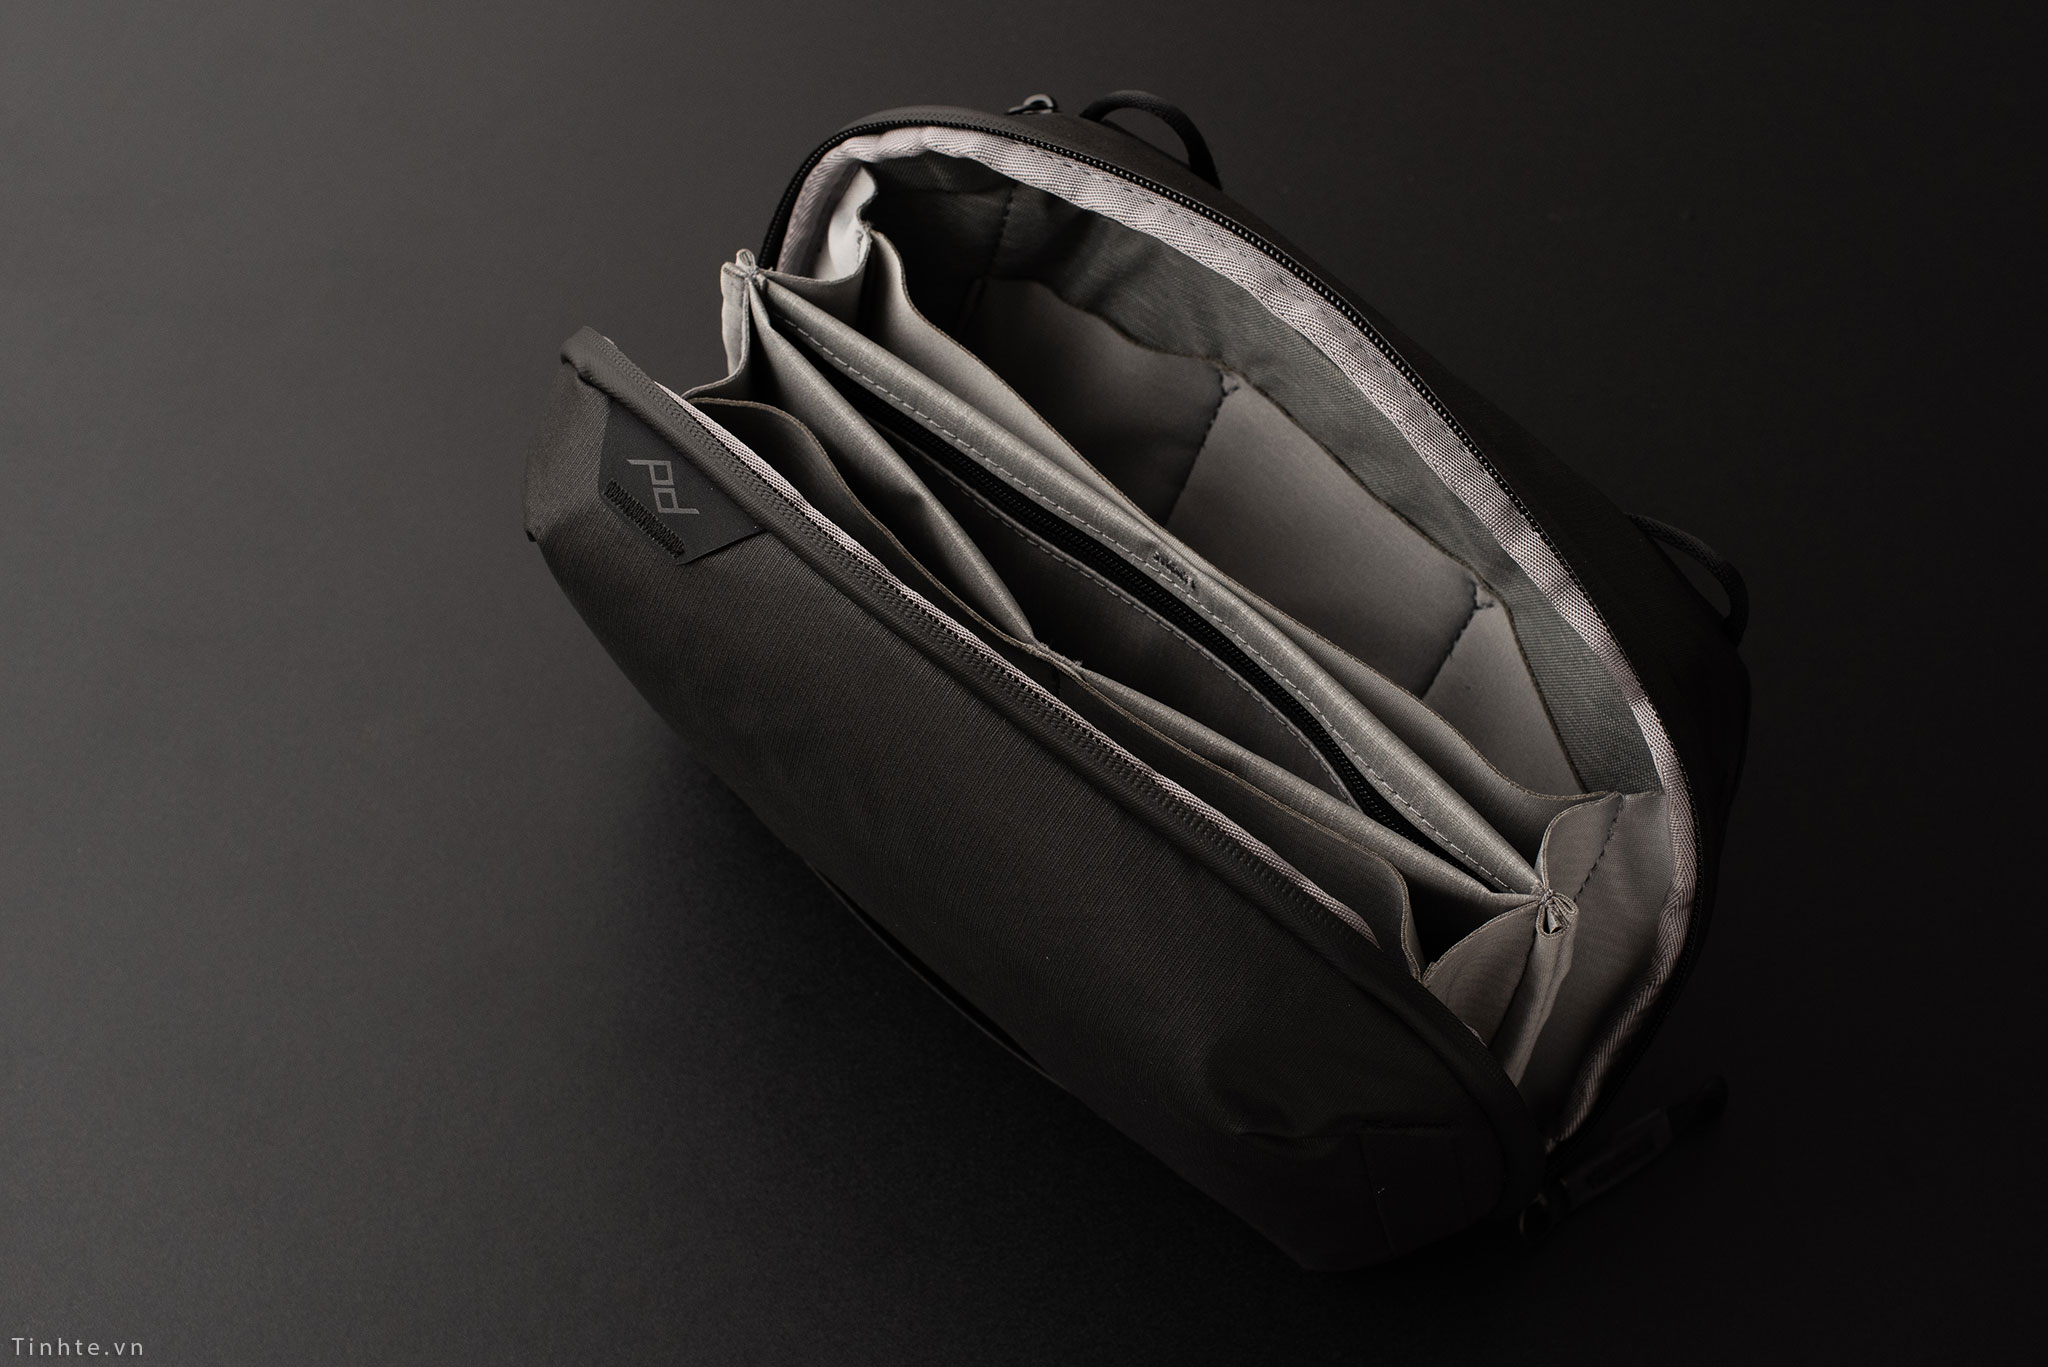 Trên tay túi đựng phụ kiện Peak Design Tech Pouch: 21 ngăn, đẹp, bền, chống nước toàn bộ